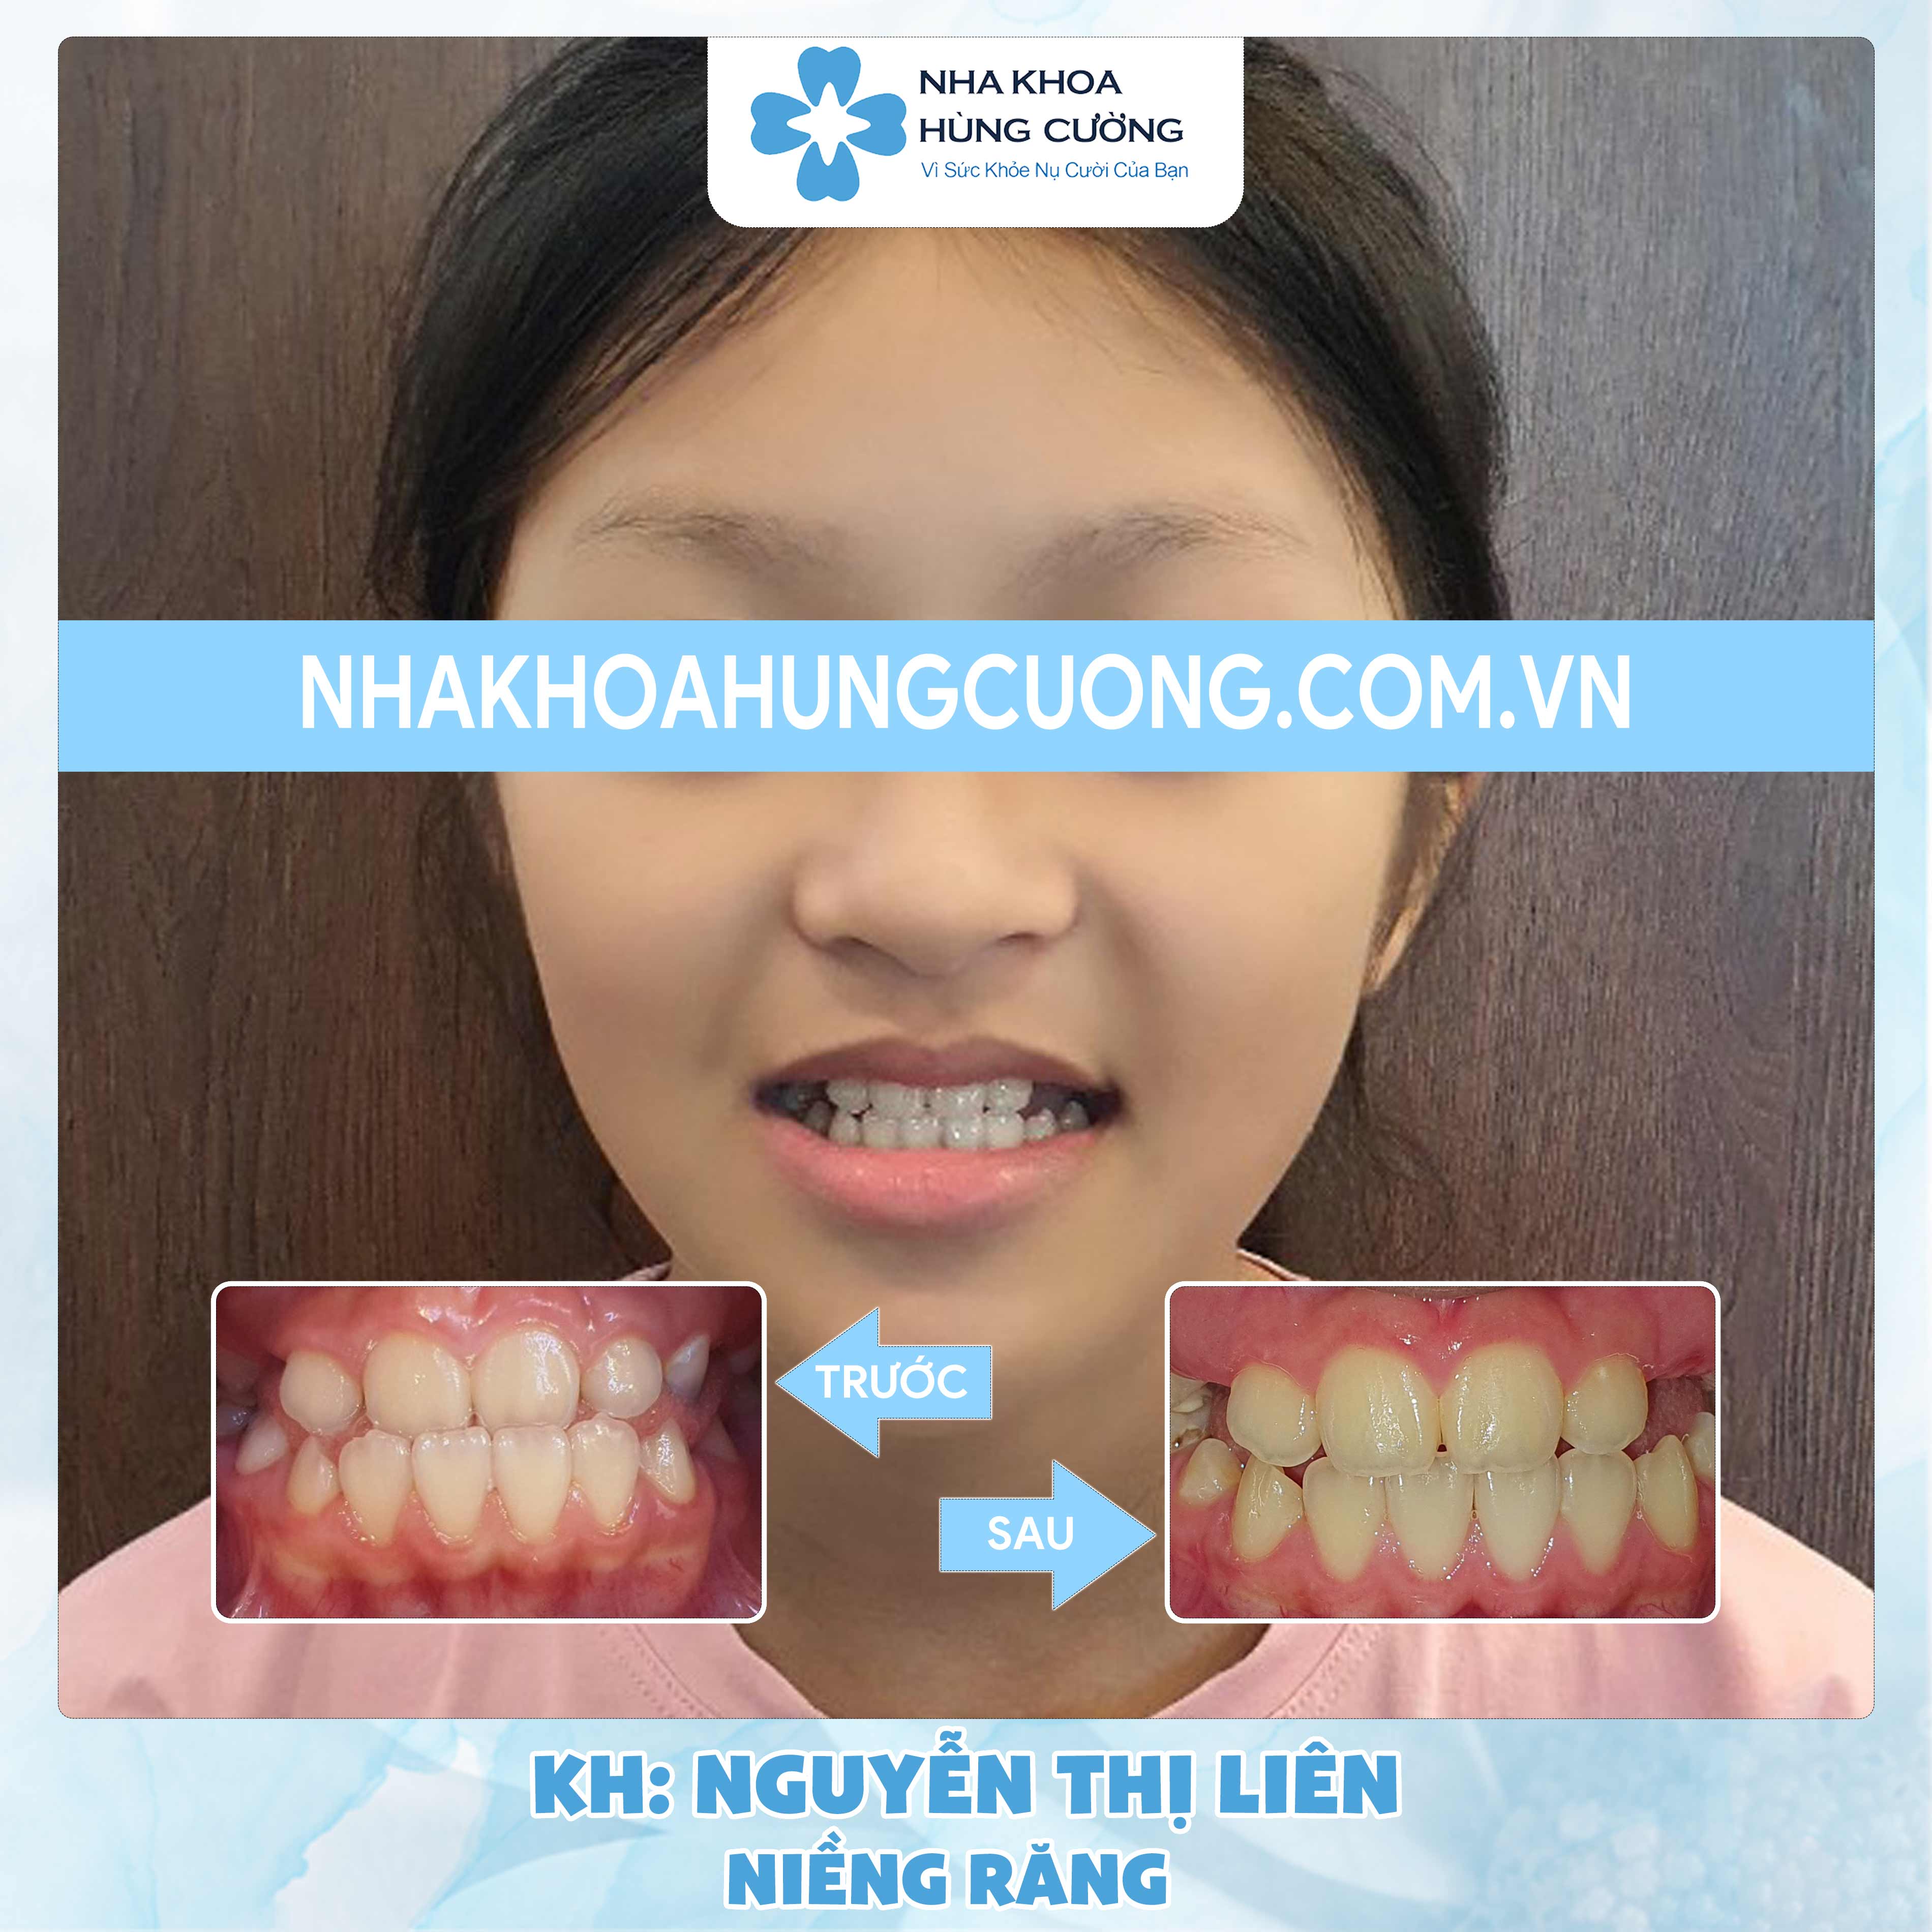 Dịch vụ Niềng răng – Khách hàng Nguyễn Thị Liên